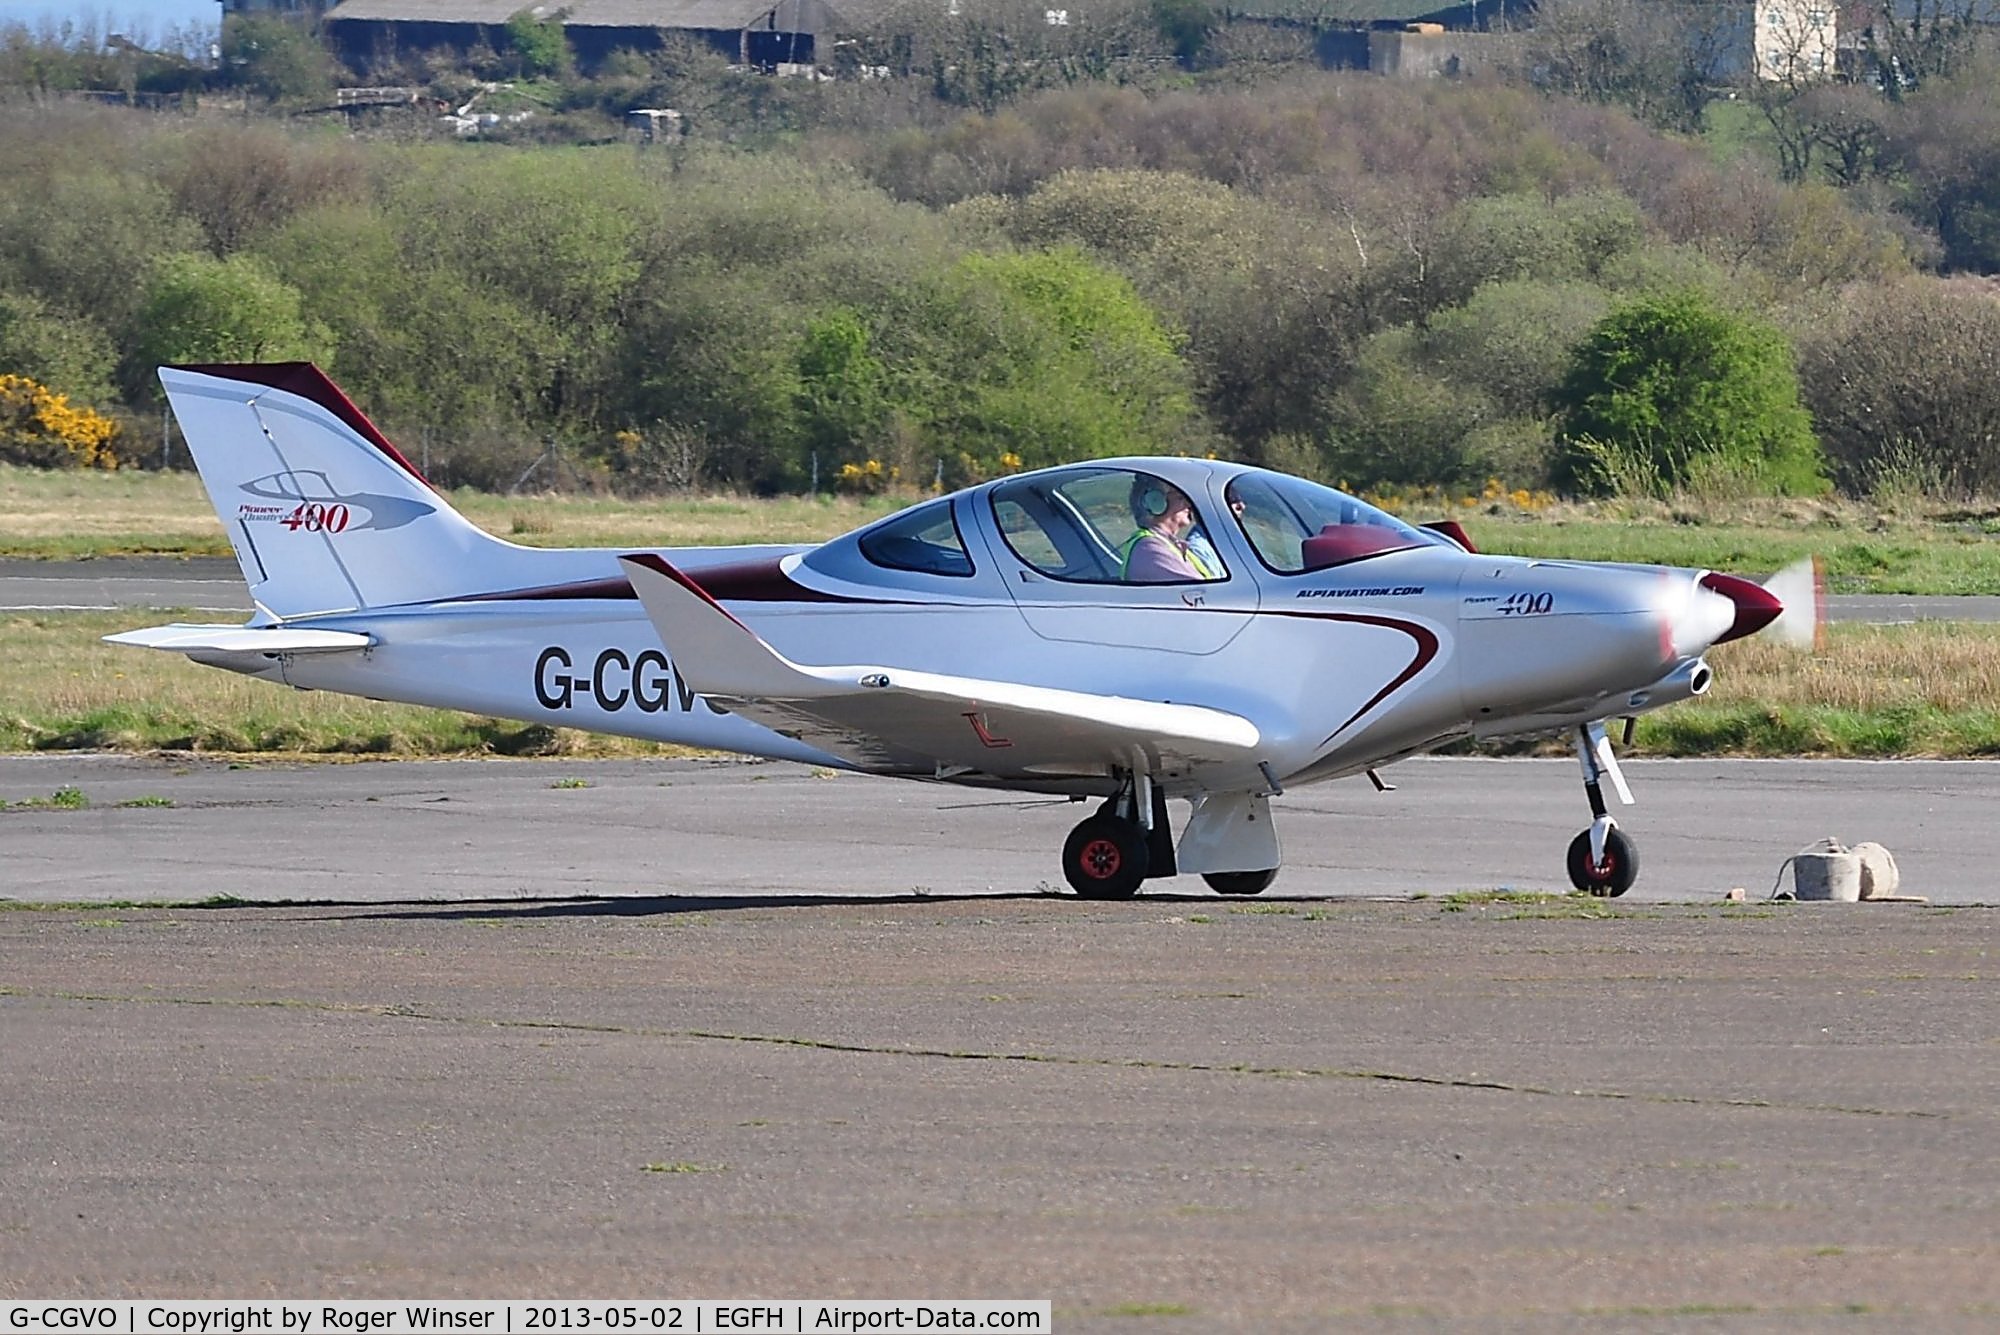 G-CGVO, 2011 Alpi Aviation Pioneer 400 C/N LAA 364-15006, Visiting Pioneer 400.